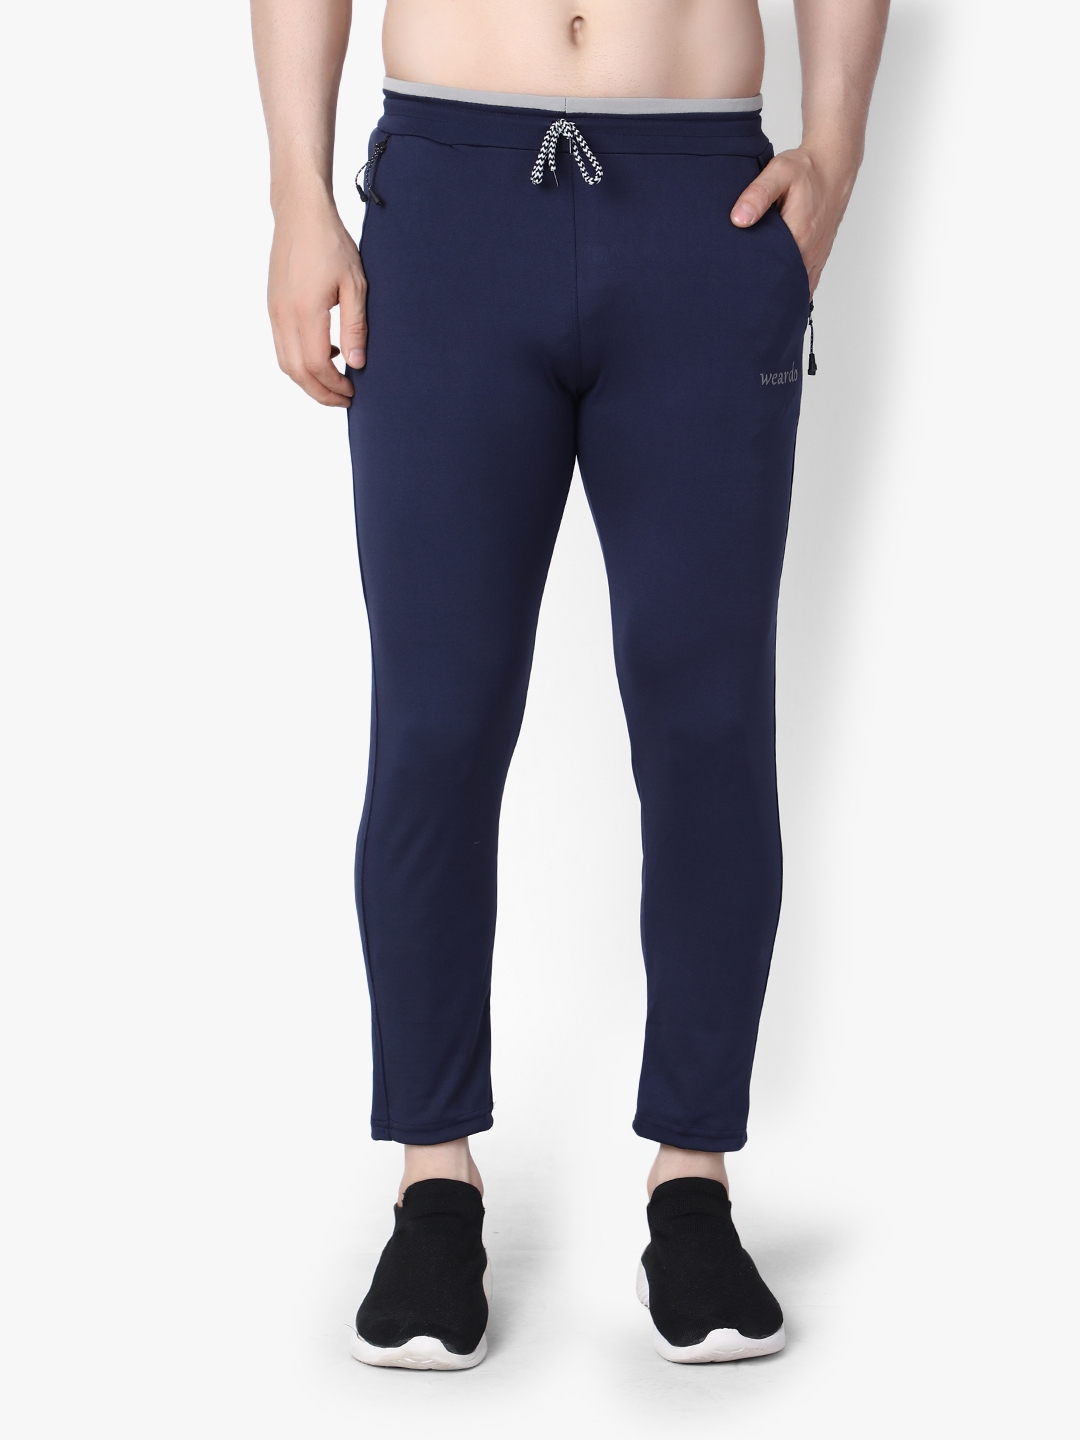 Weardo | Weardo Men's Solid Blue Jogger in 4 Way Stretchable Fabric